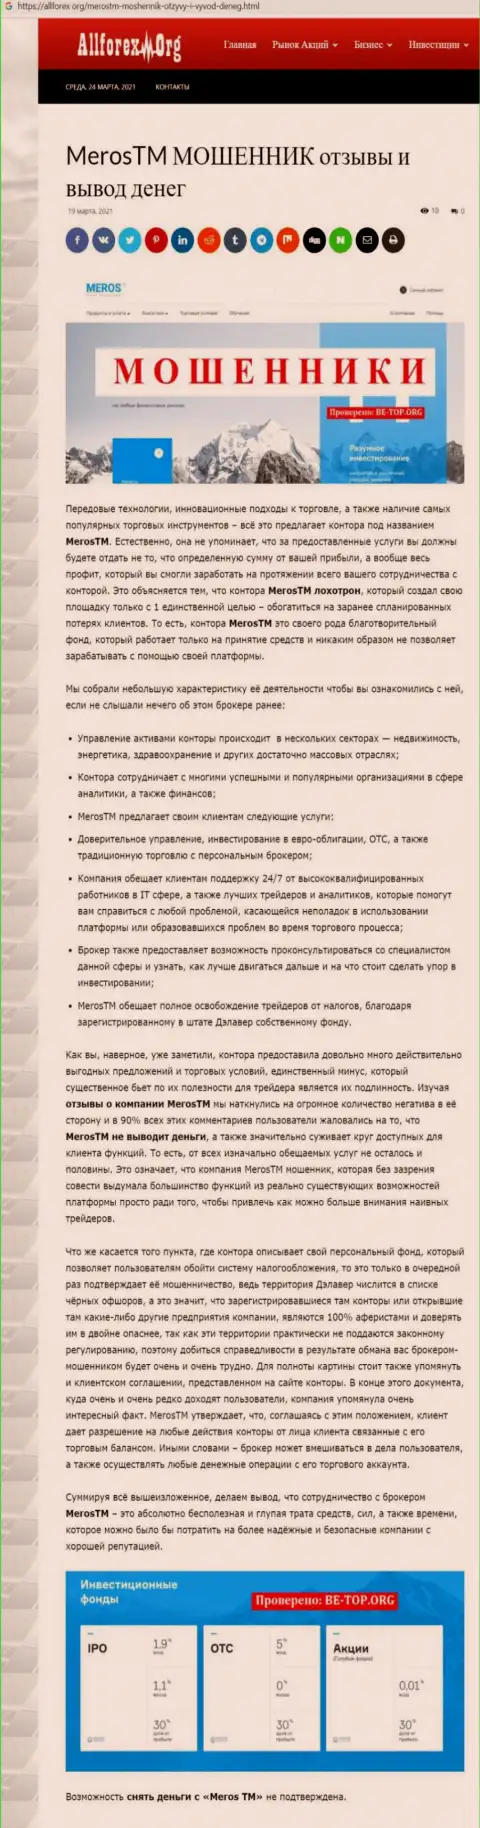 Компания MerosTM - это МОШЕННИКИ !!! Обзор с фактами кидалова